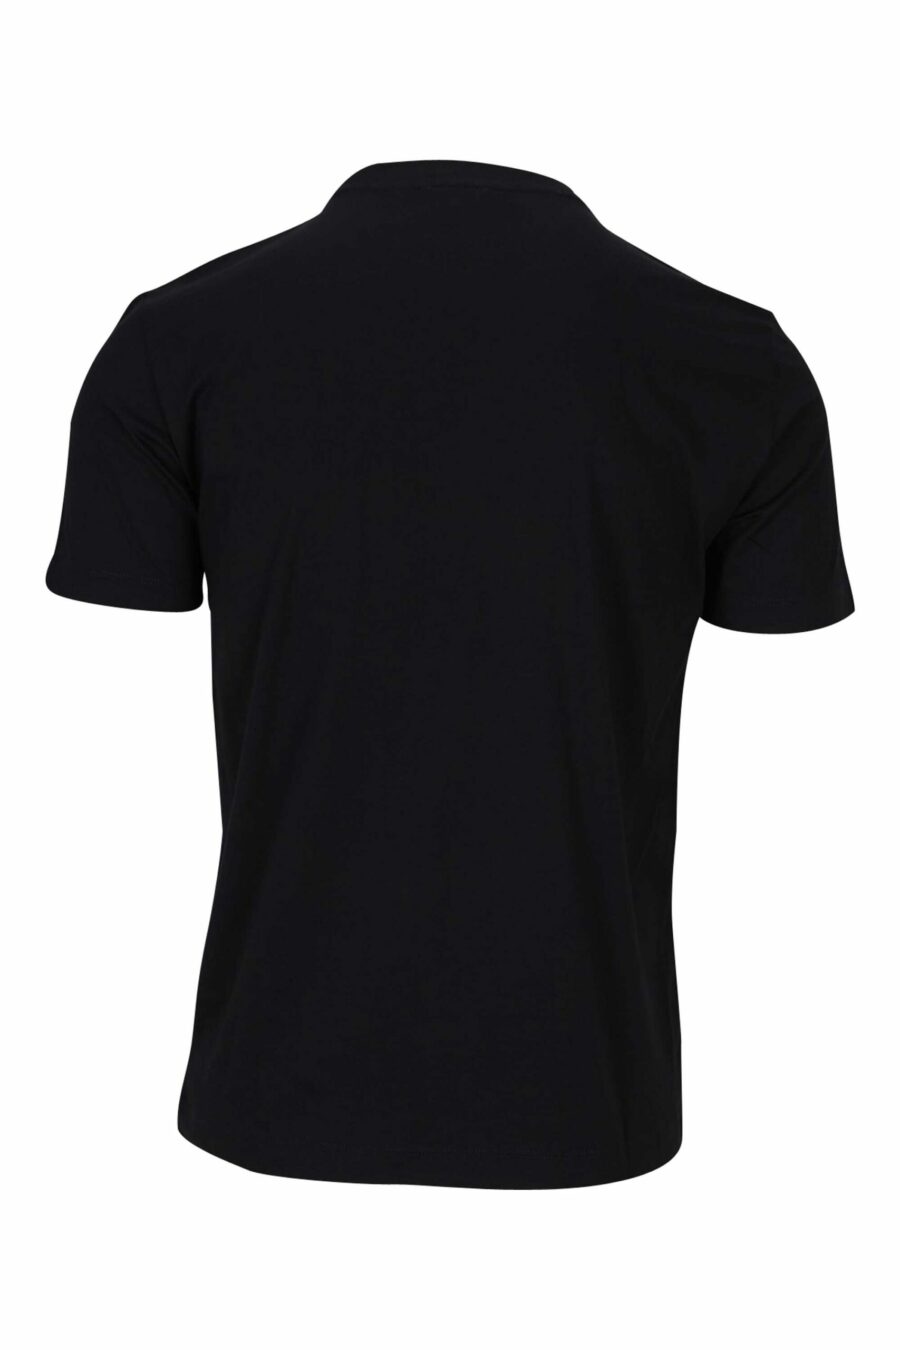 T-shirt noir avec maxilogo "lux identity" en gris - 8056787953321 1 scaled